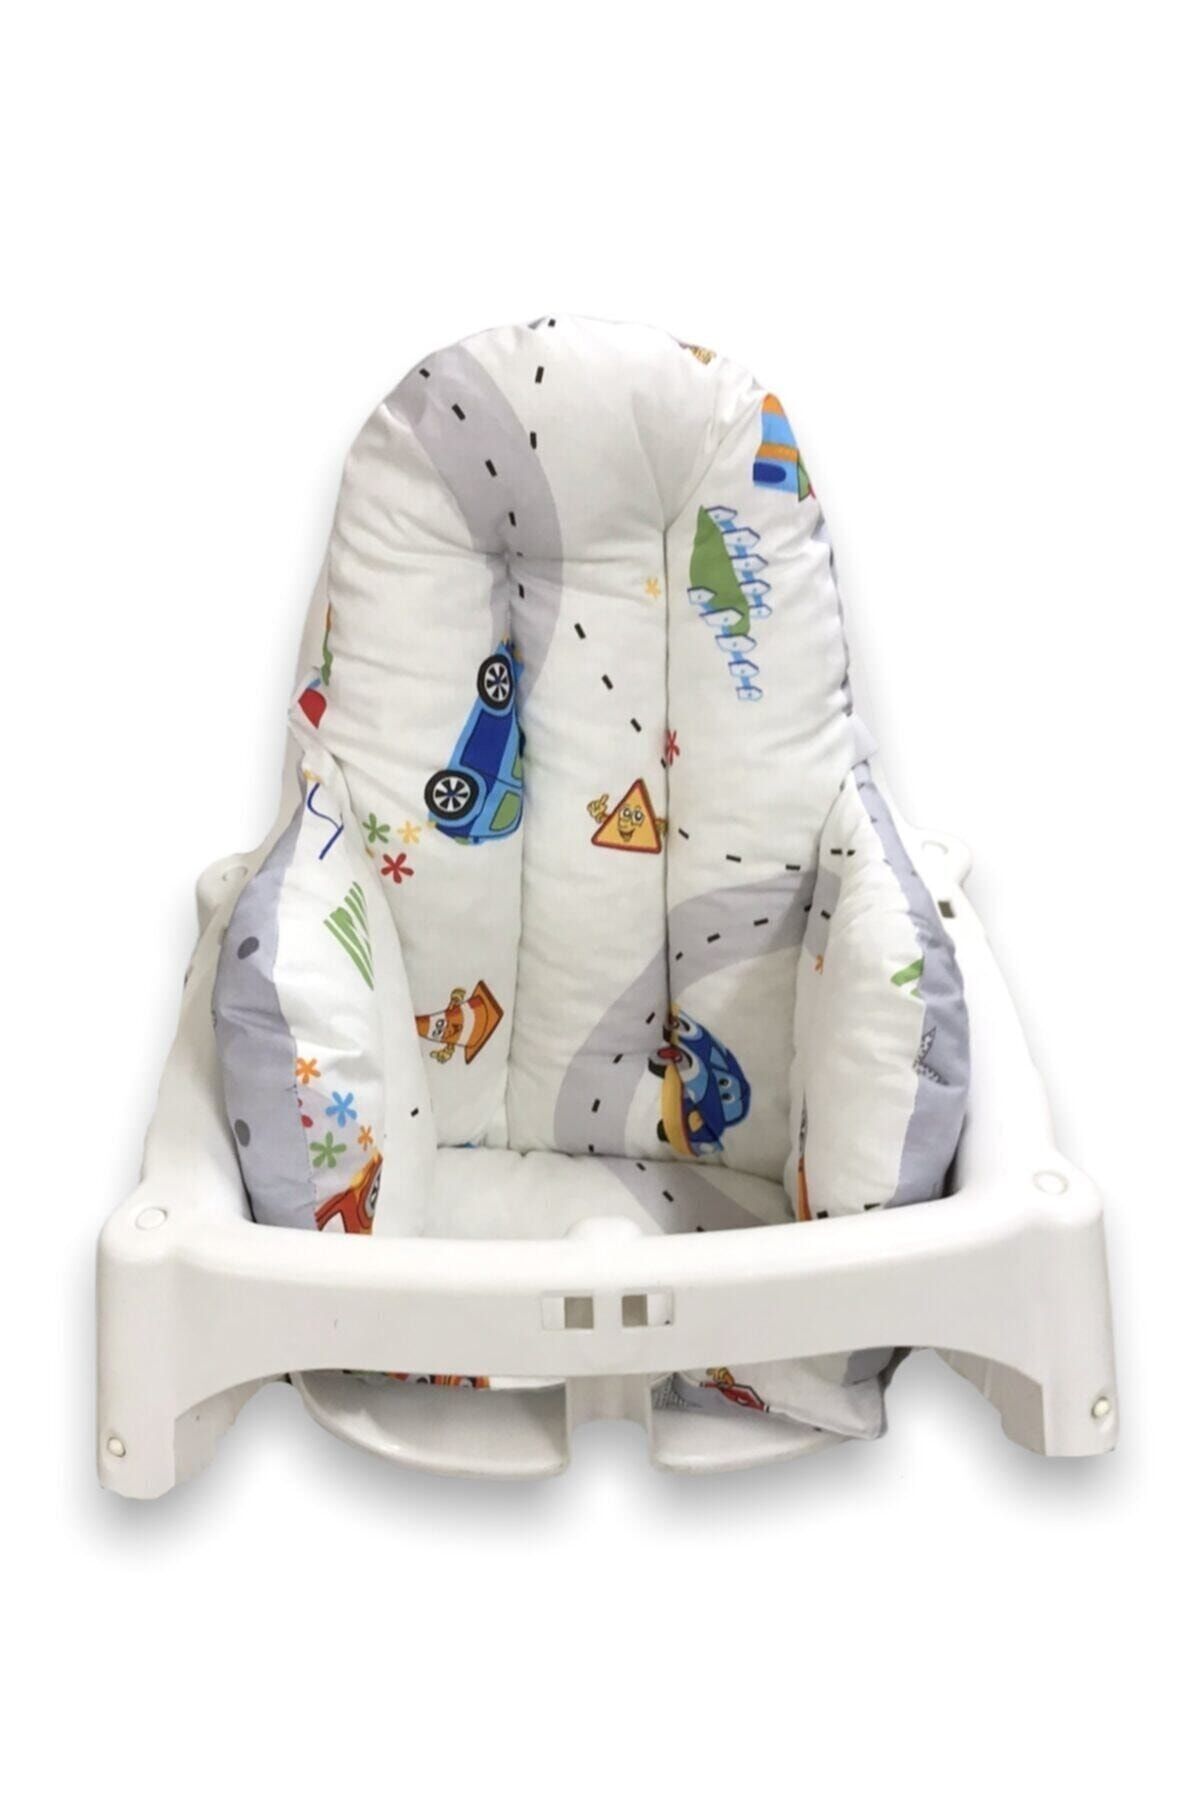 Bebek Özel Pamuklu Bebek Çocuk Mama Sandalyesi Minderi Arabalı Gri Yıldızlı